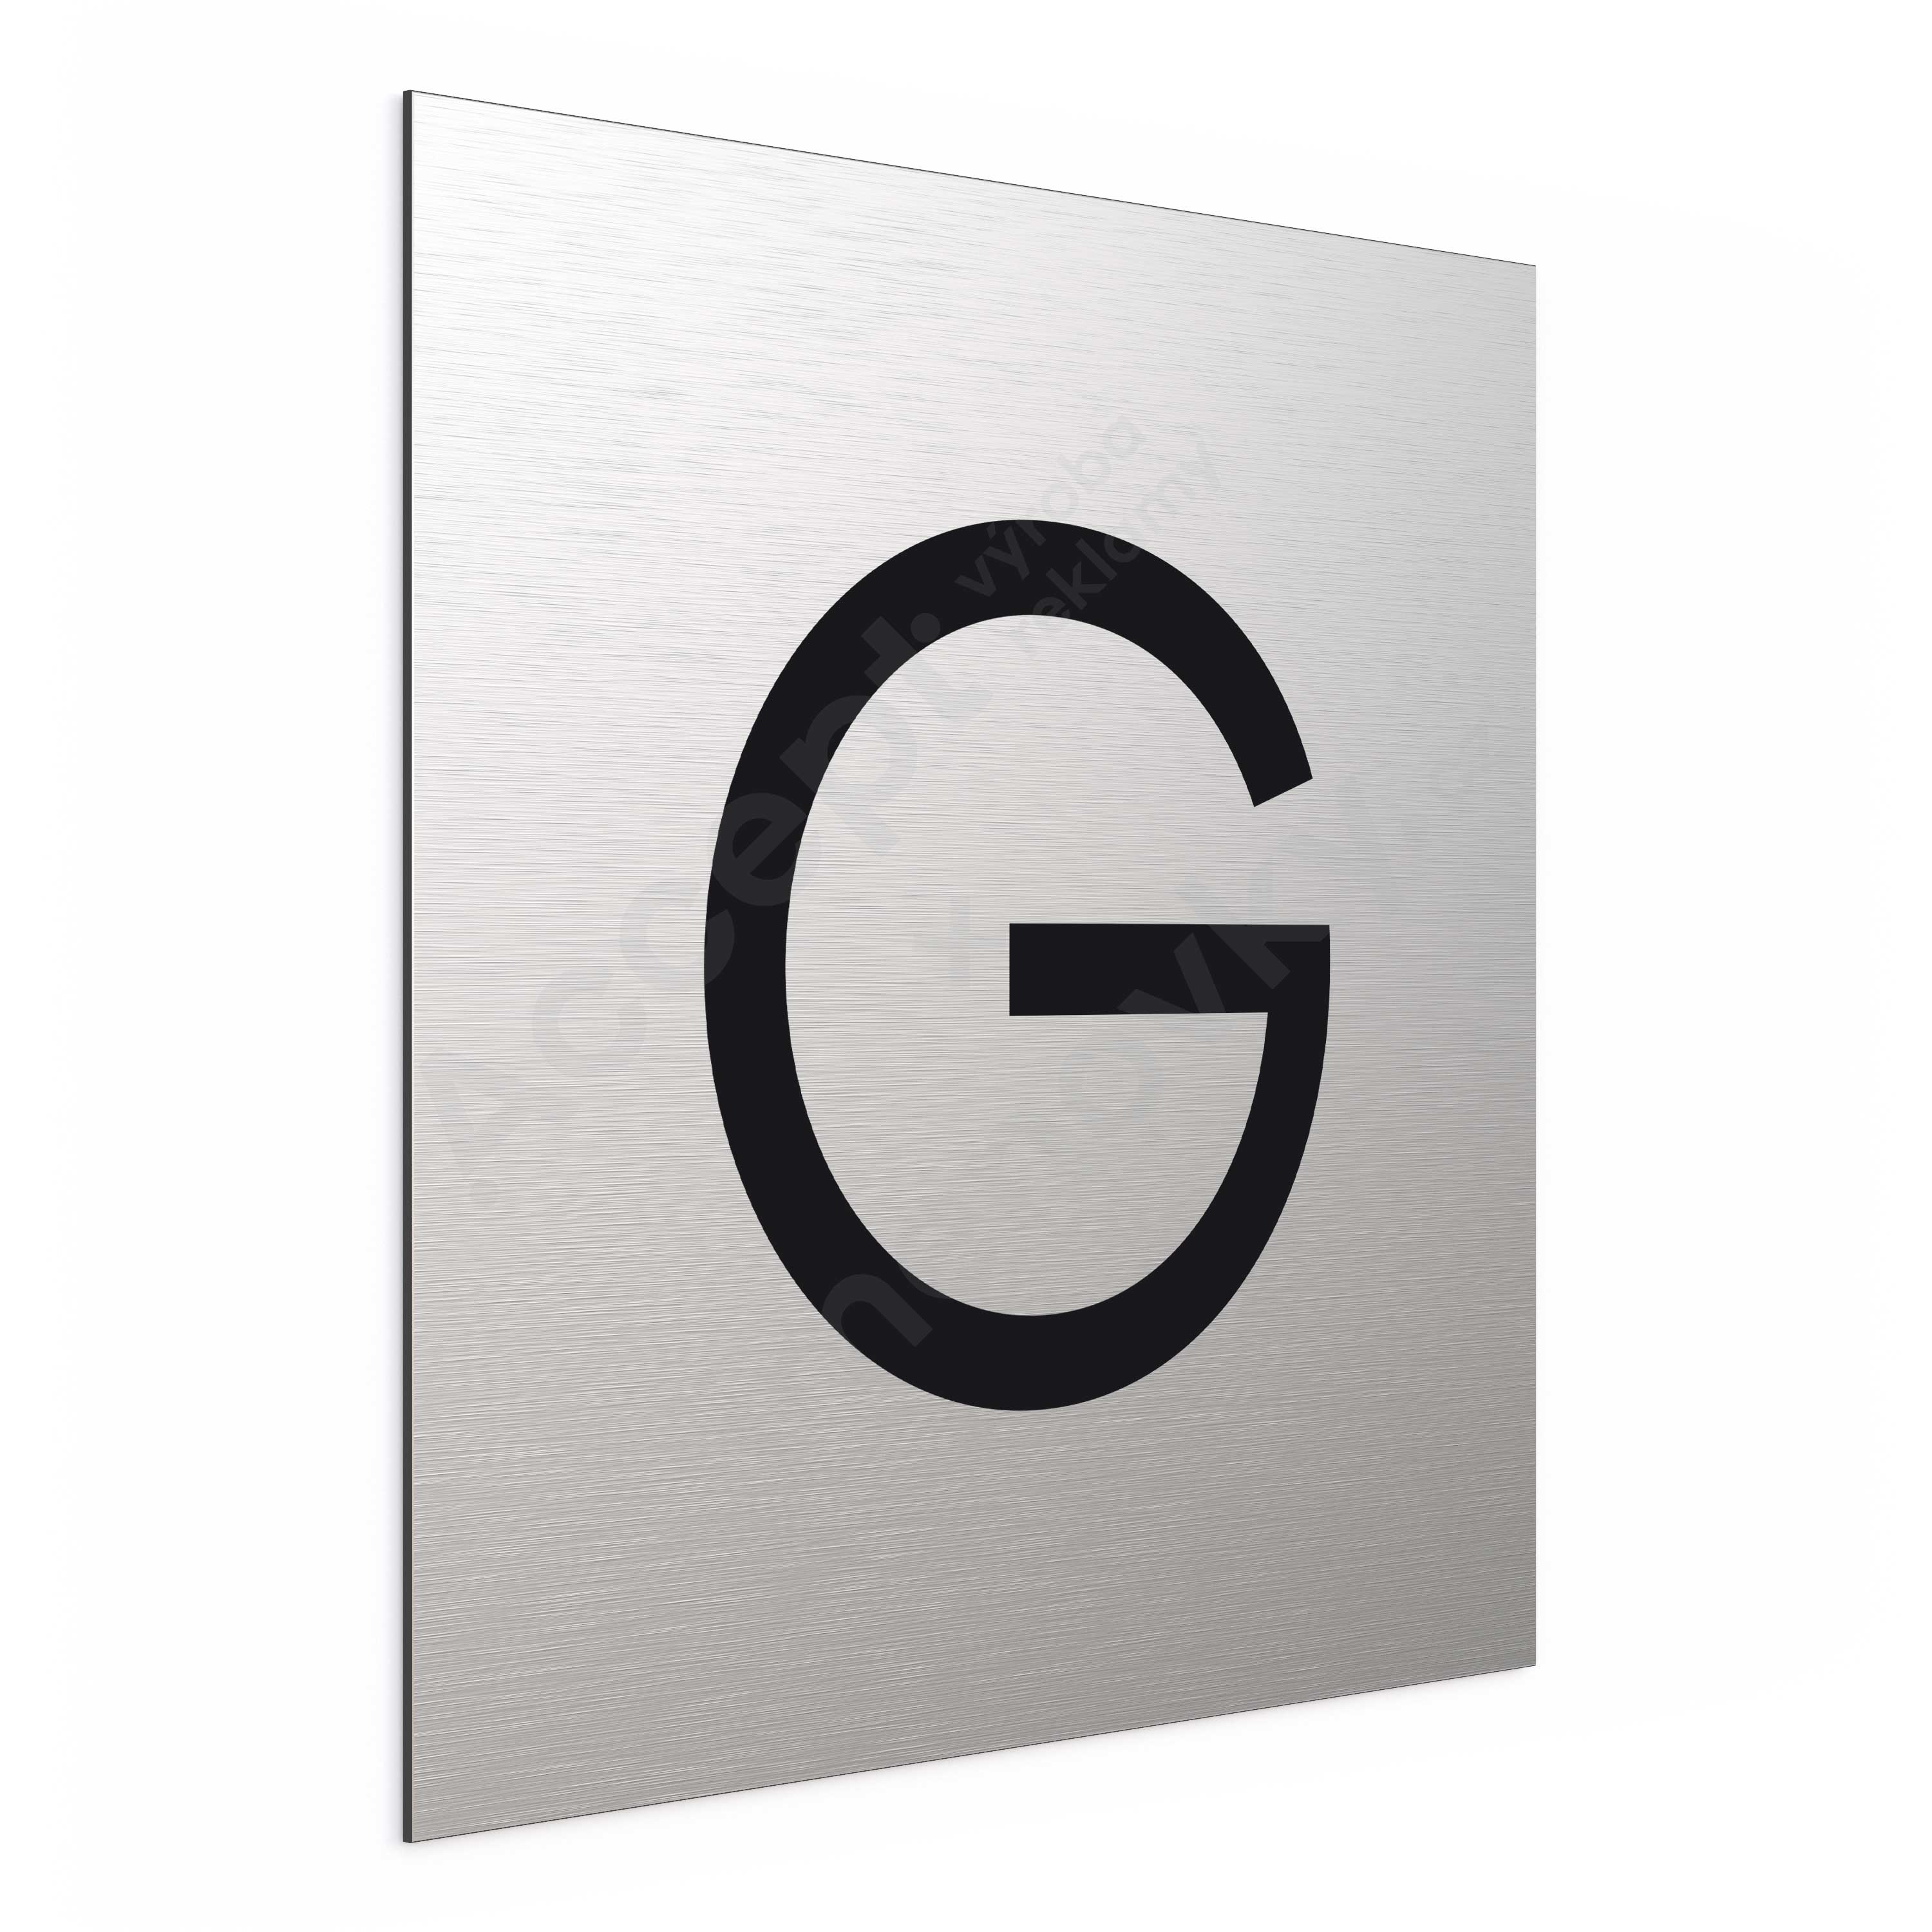 Označení podlaží - písmeno "G" (300 x 300 mm)